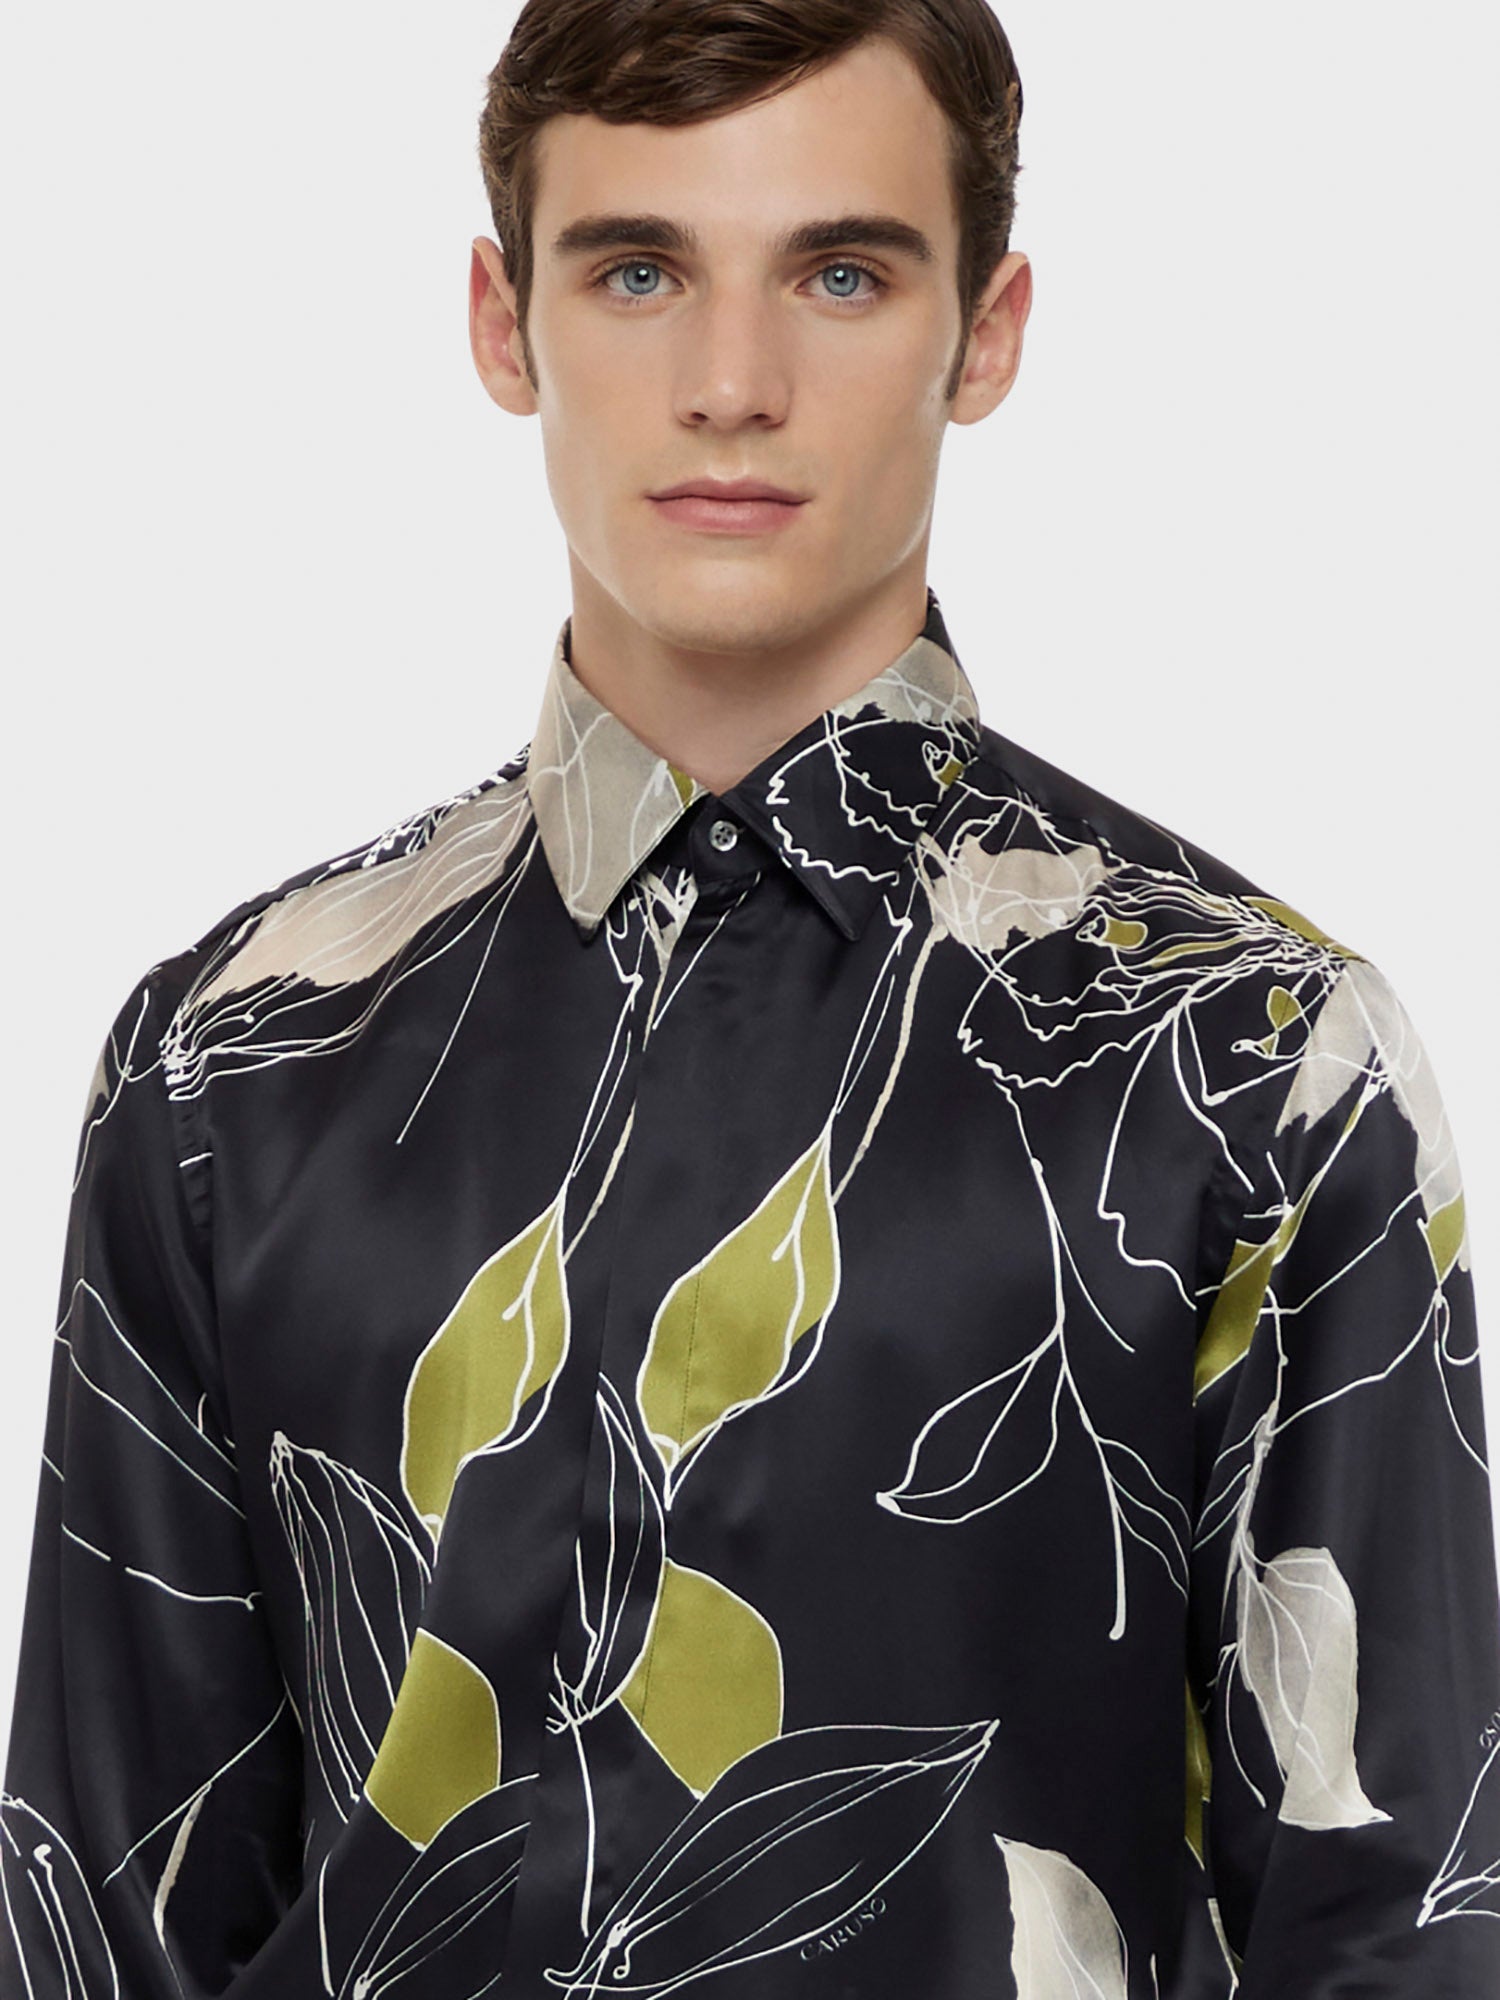 Caruso Menswear Abbigliamento Uomo Camicia in seta floreale nera dettaglio